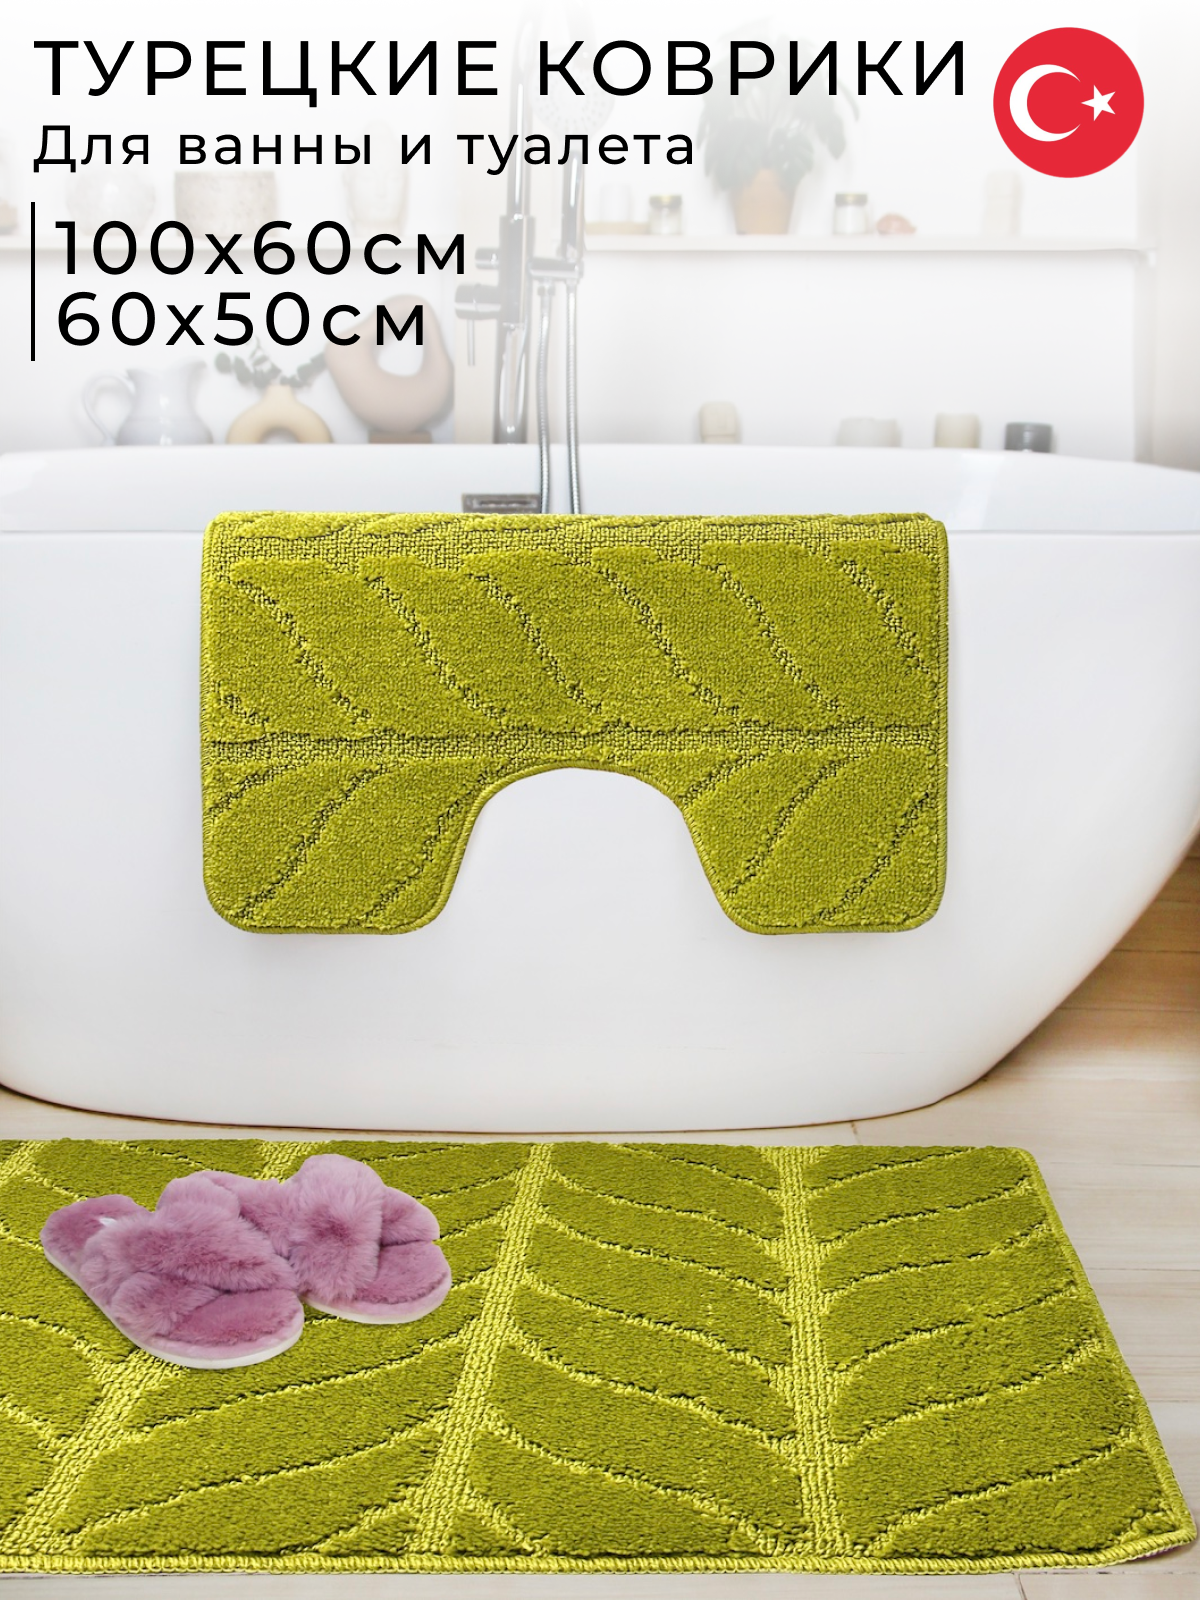 Коврики для ванной и туалета Fantastik 100х60 см и 60х50 см, салатовый